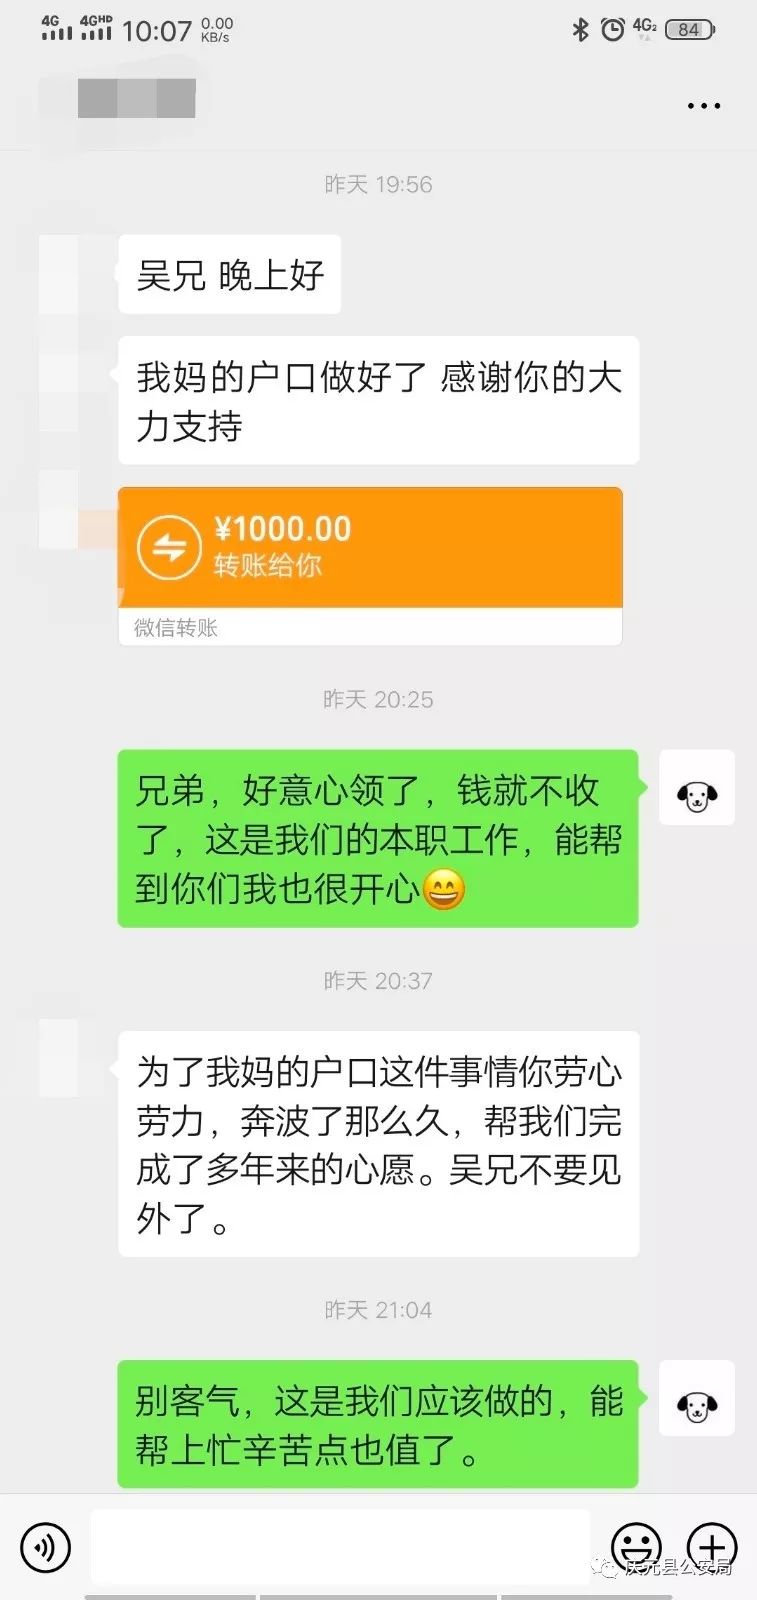 通过之前取证时加的微信 找到了民警吴志轩 并发来了1000元的"谢礼"